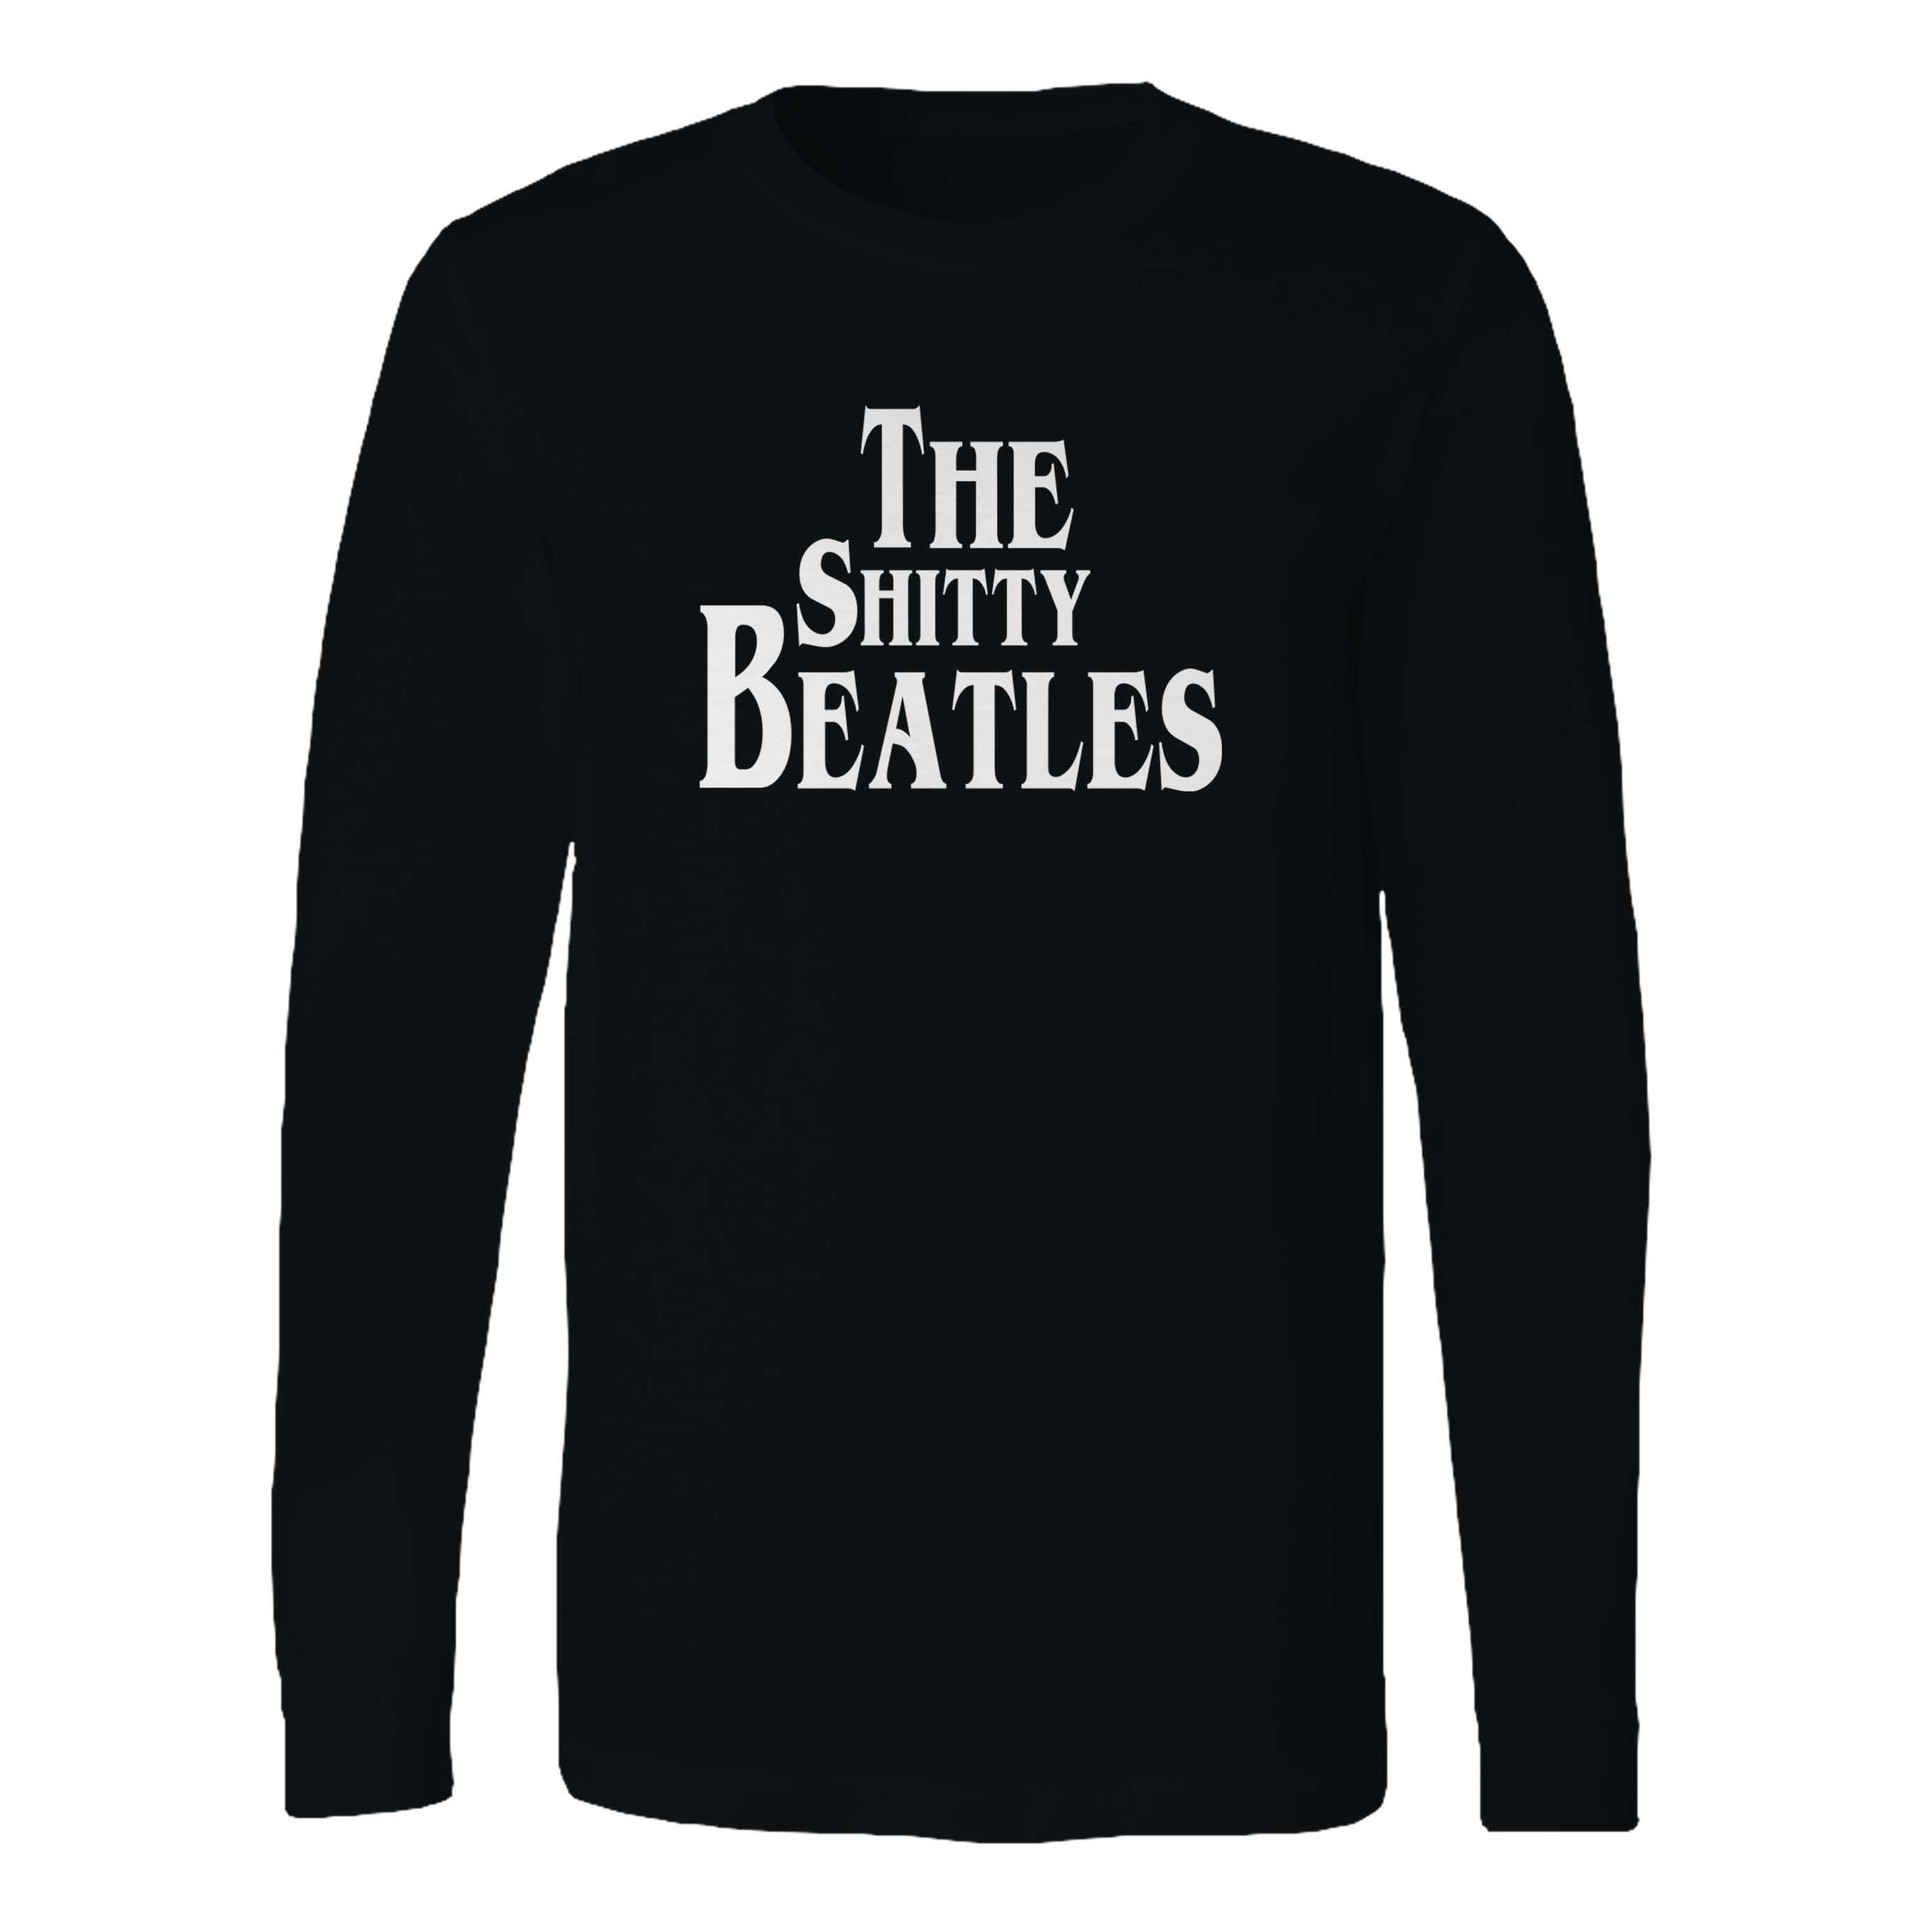 The Beatles Logo Long Sleeve Shirt